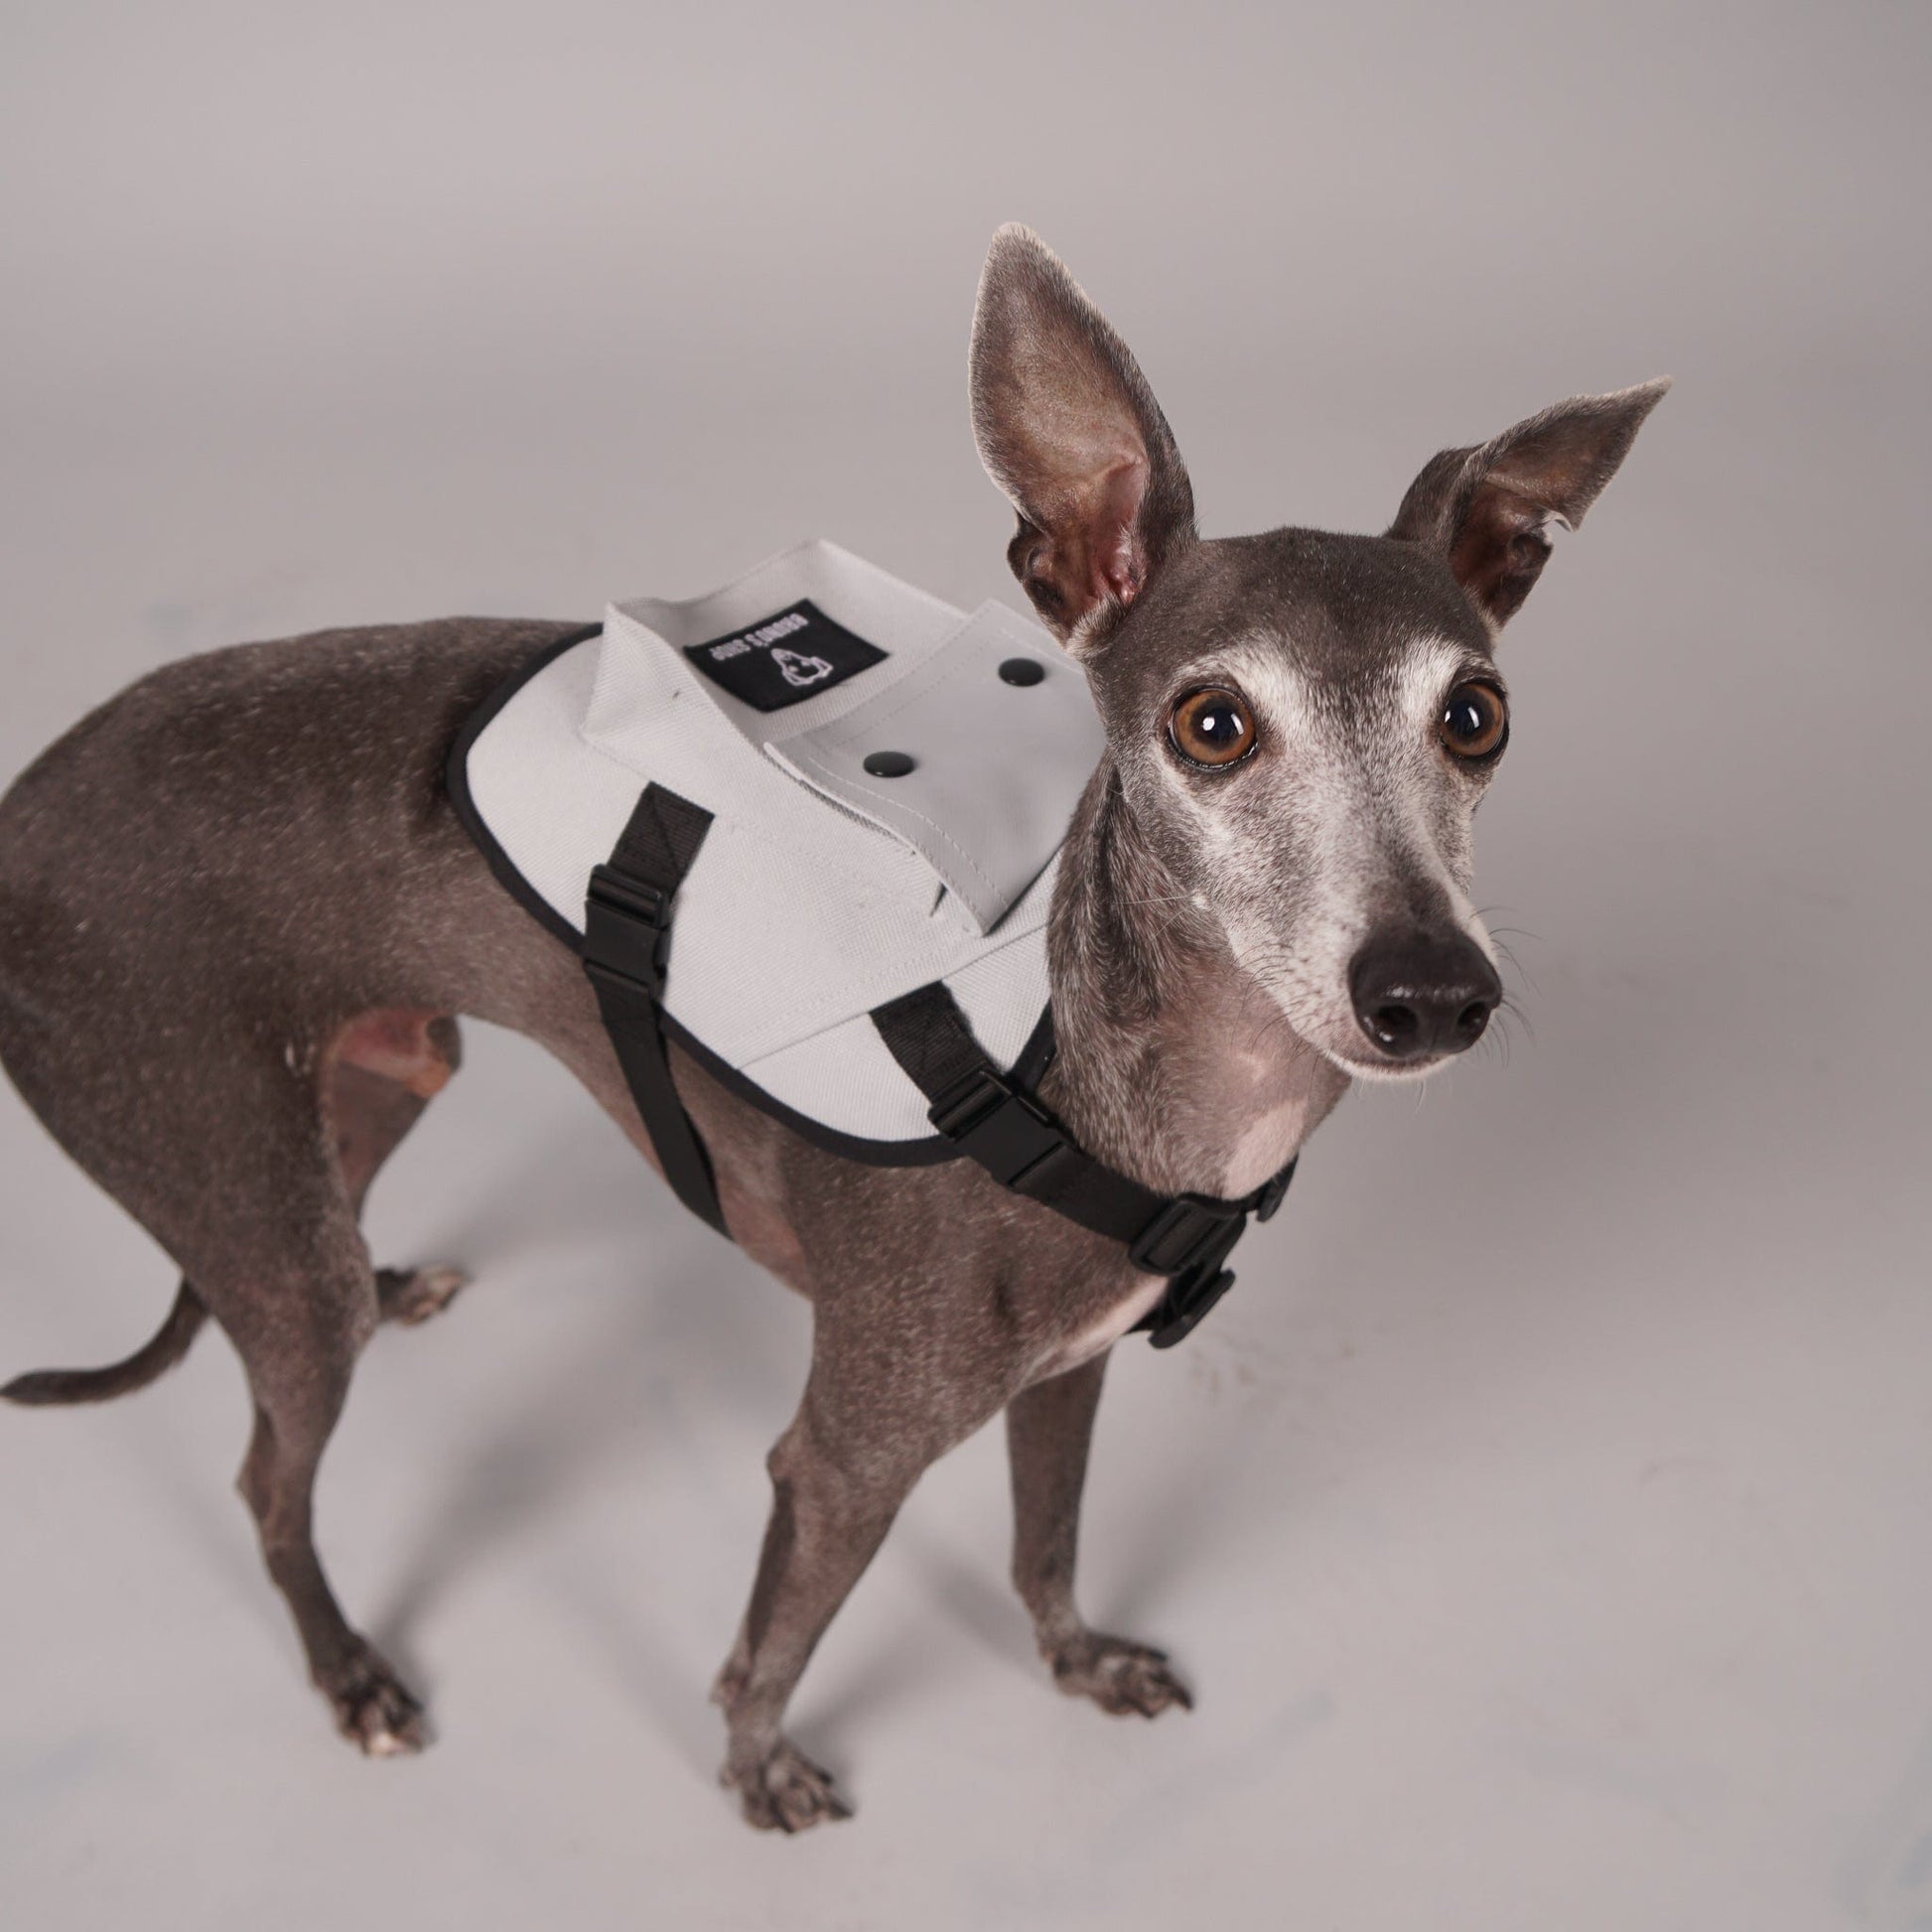 dog harness, dog backpack